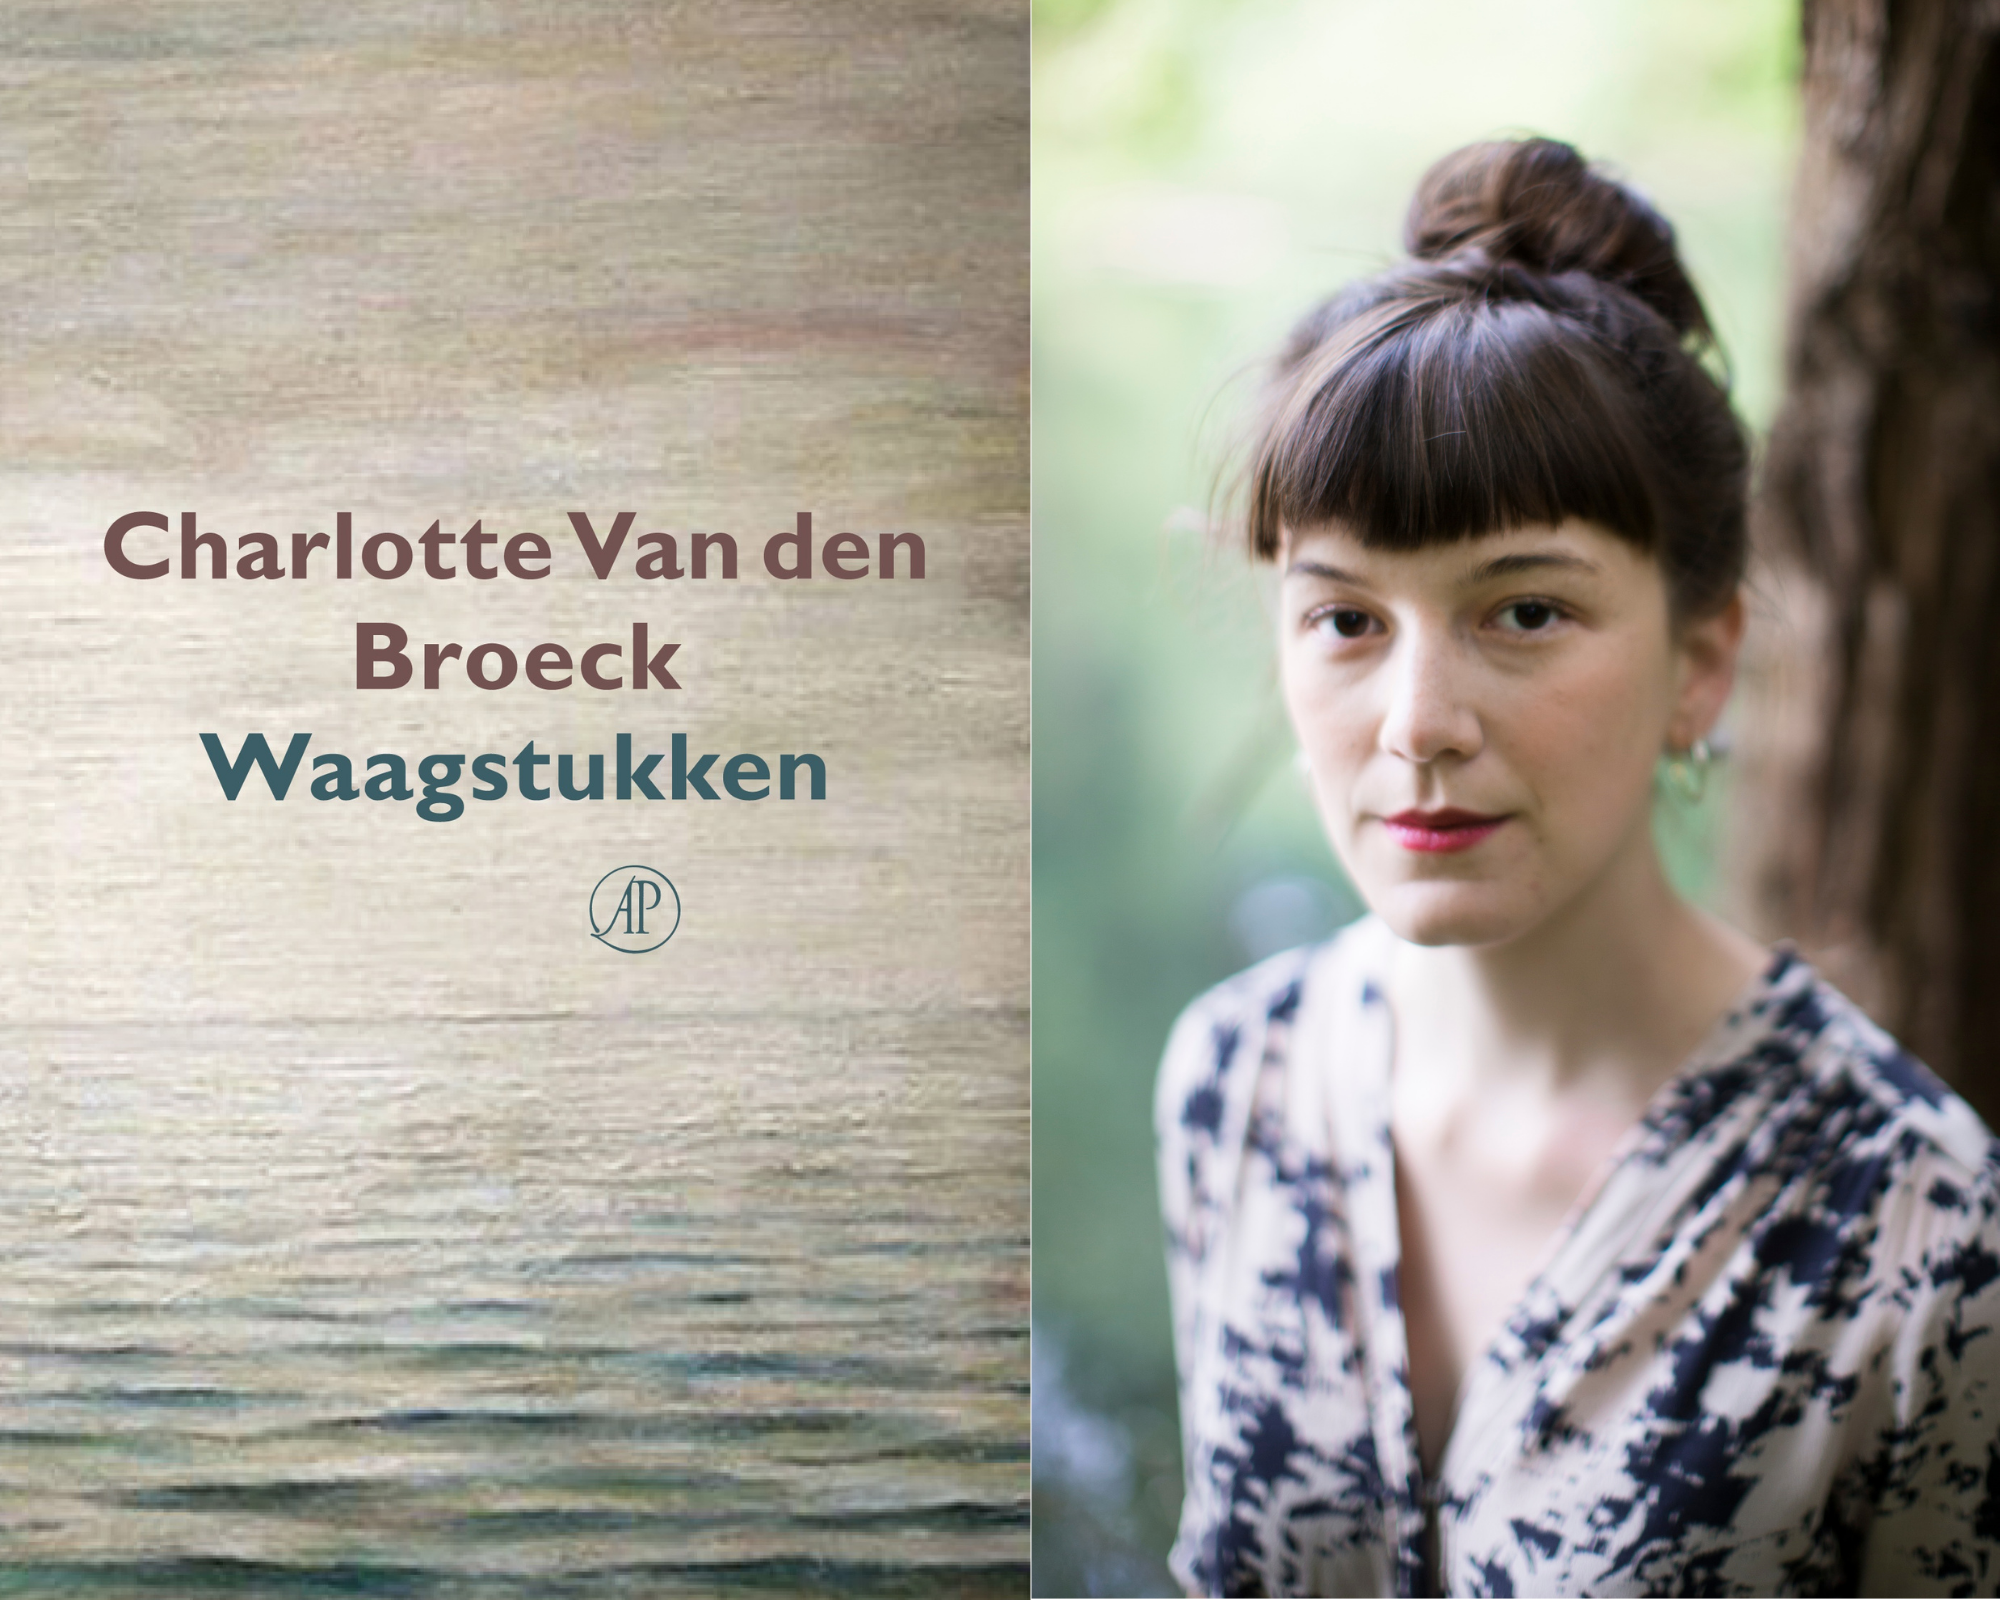 Charlotte Van den Broeck Waagstukken